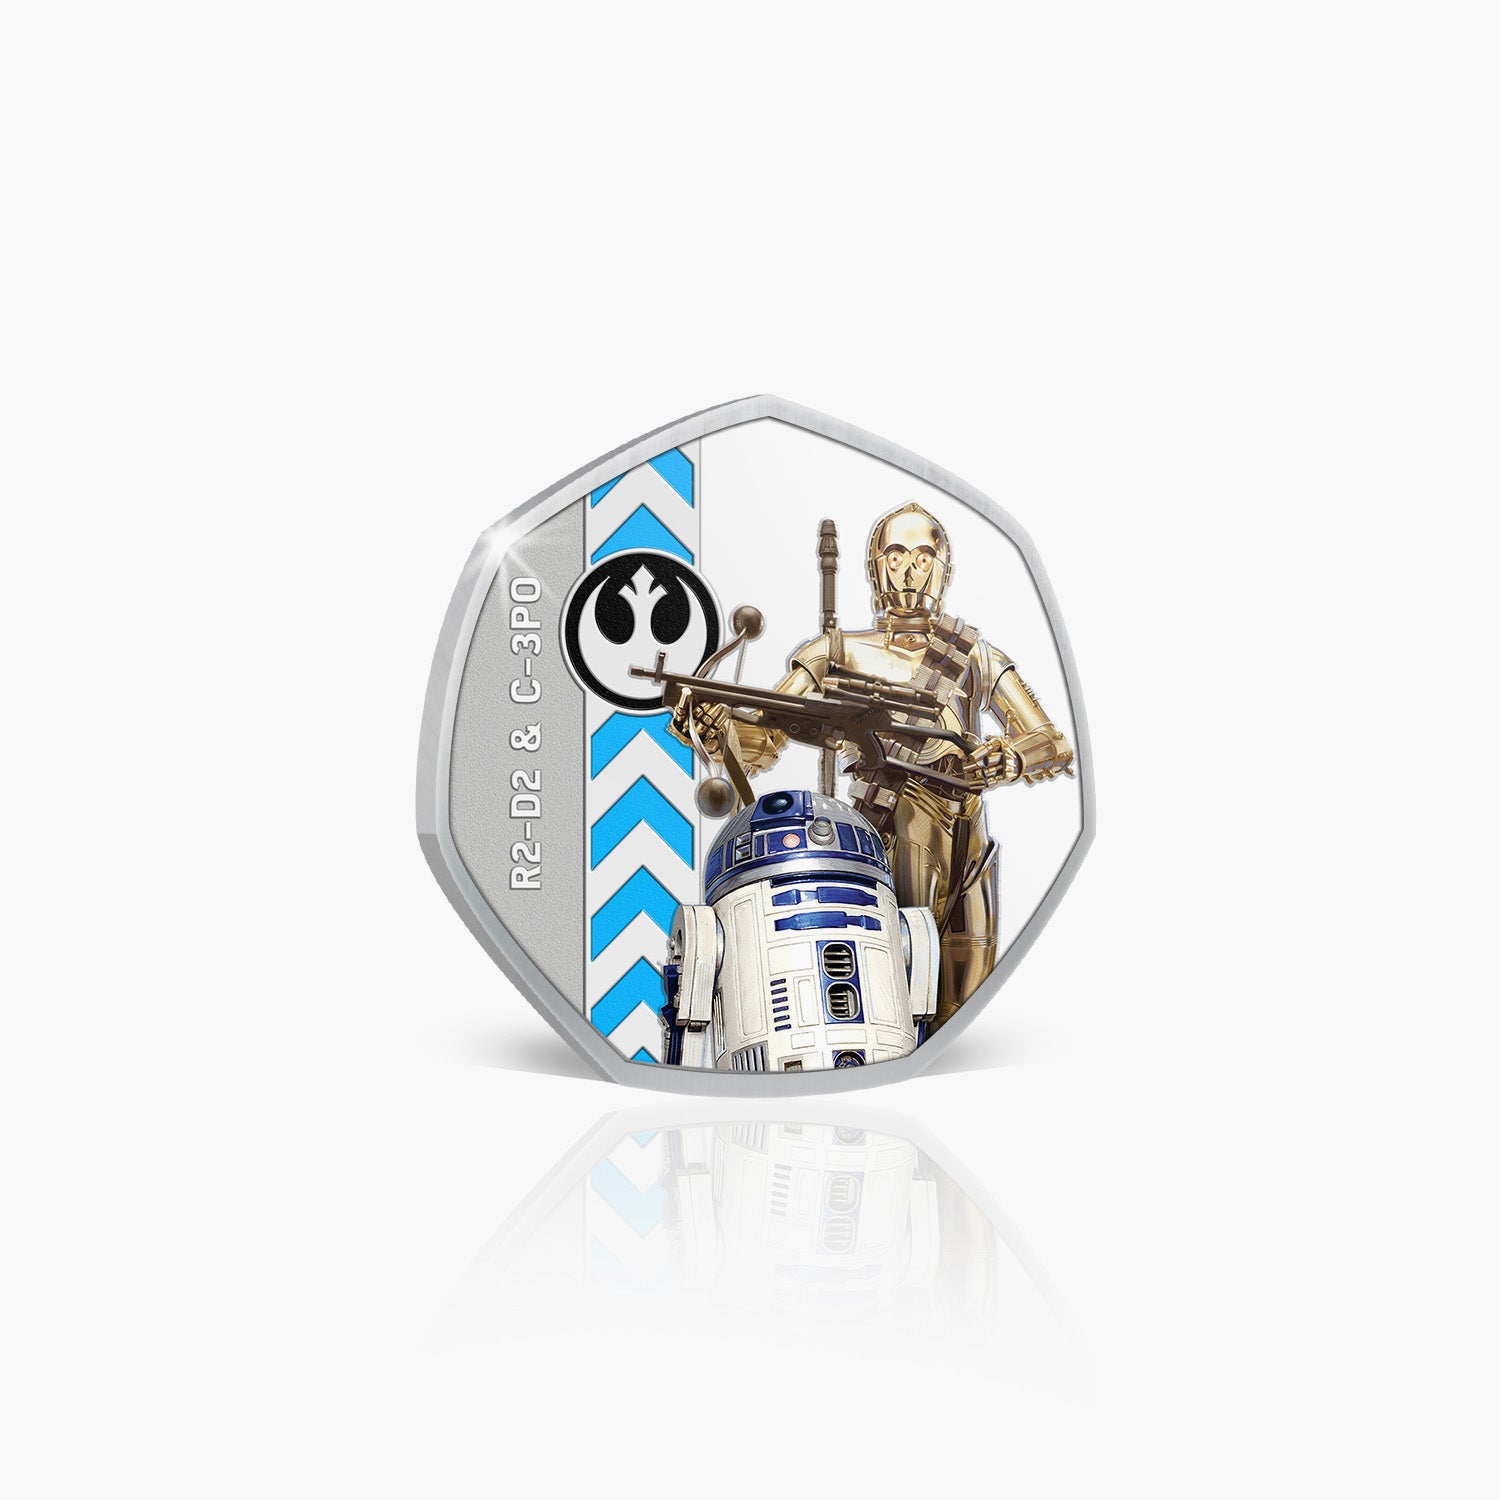 R2-D2 & C-3PO Silver-Plated Commemorative